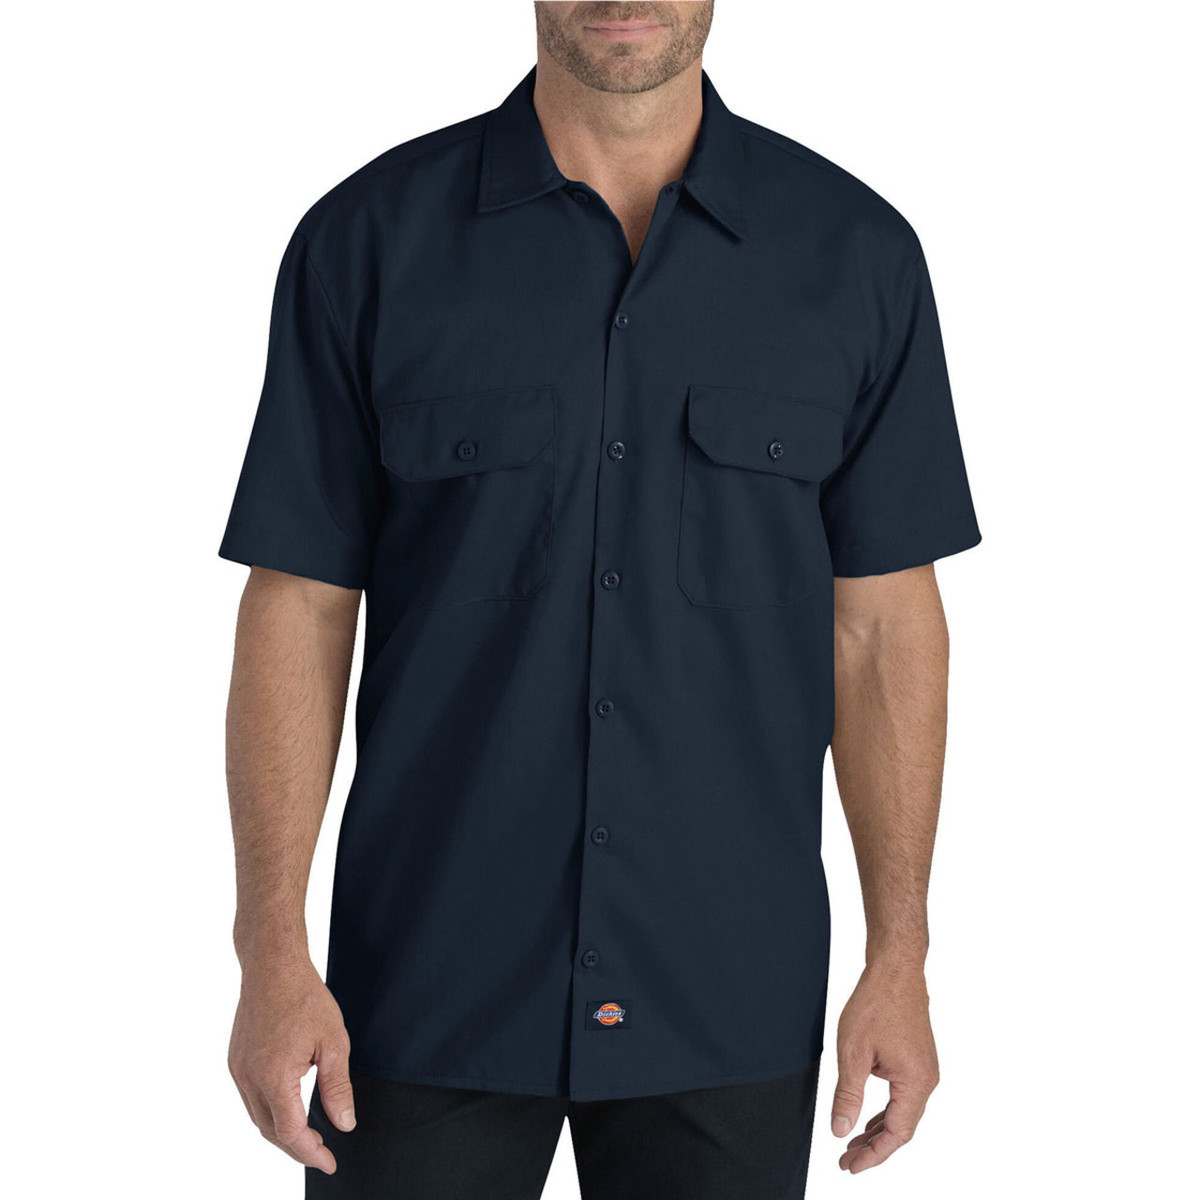 Dickies Men's FLEX - Relaxed Fit Short Sleeve Work Shirt